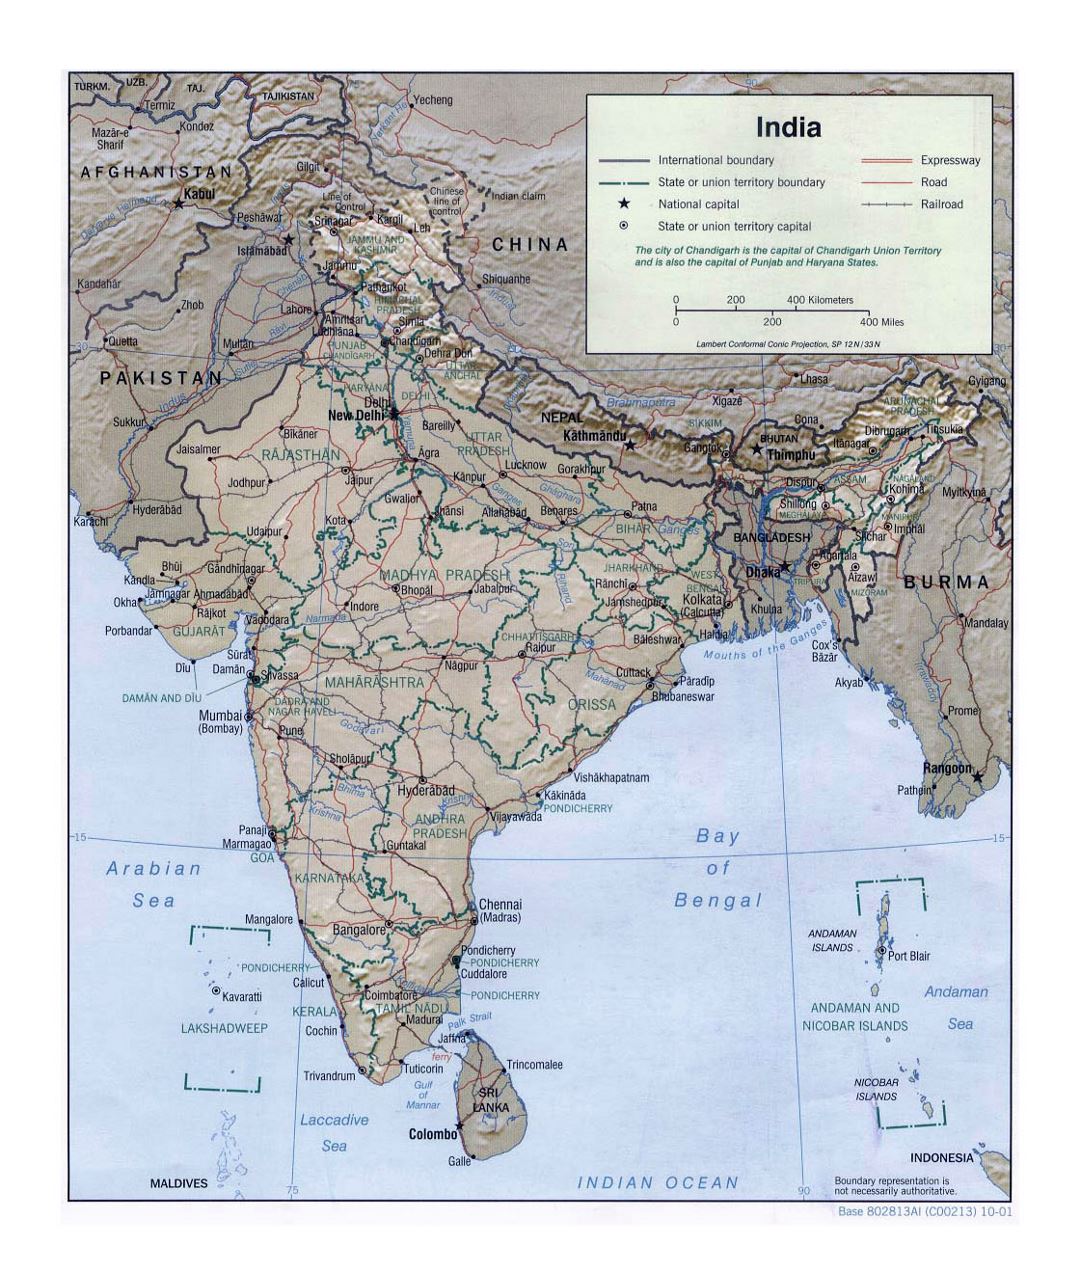 Grande mapa político y administrativo de la India con relieve, carreteras, ferrocarriles y grandes ciudades - 2001